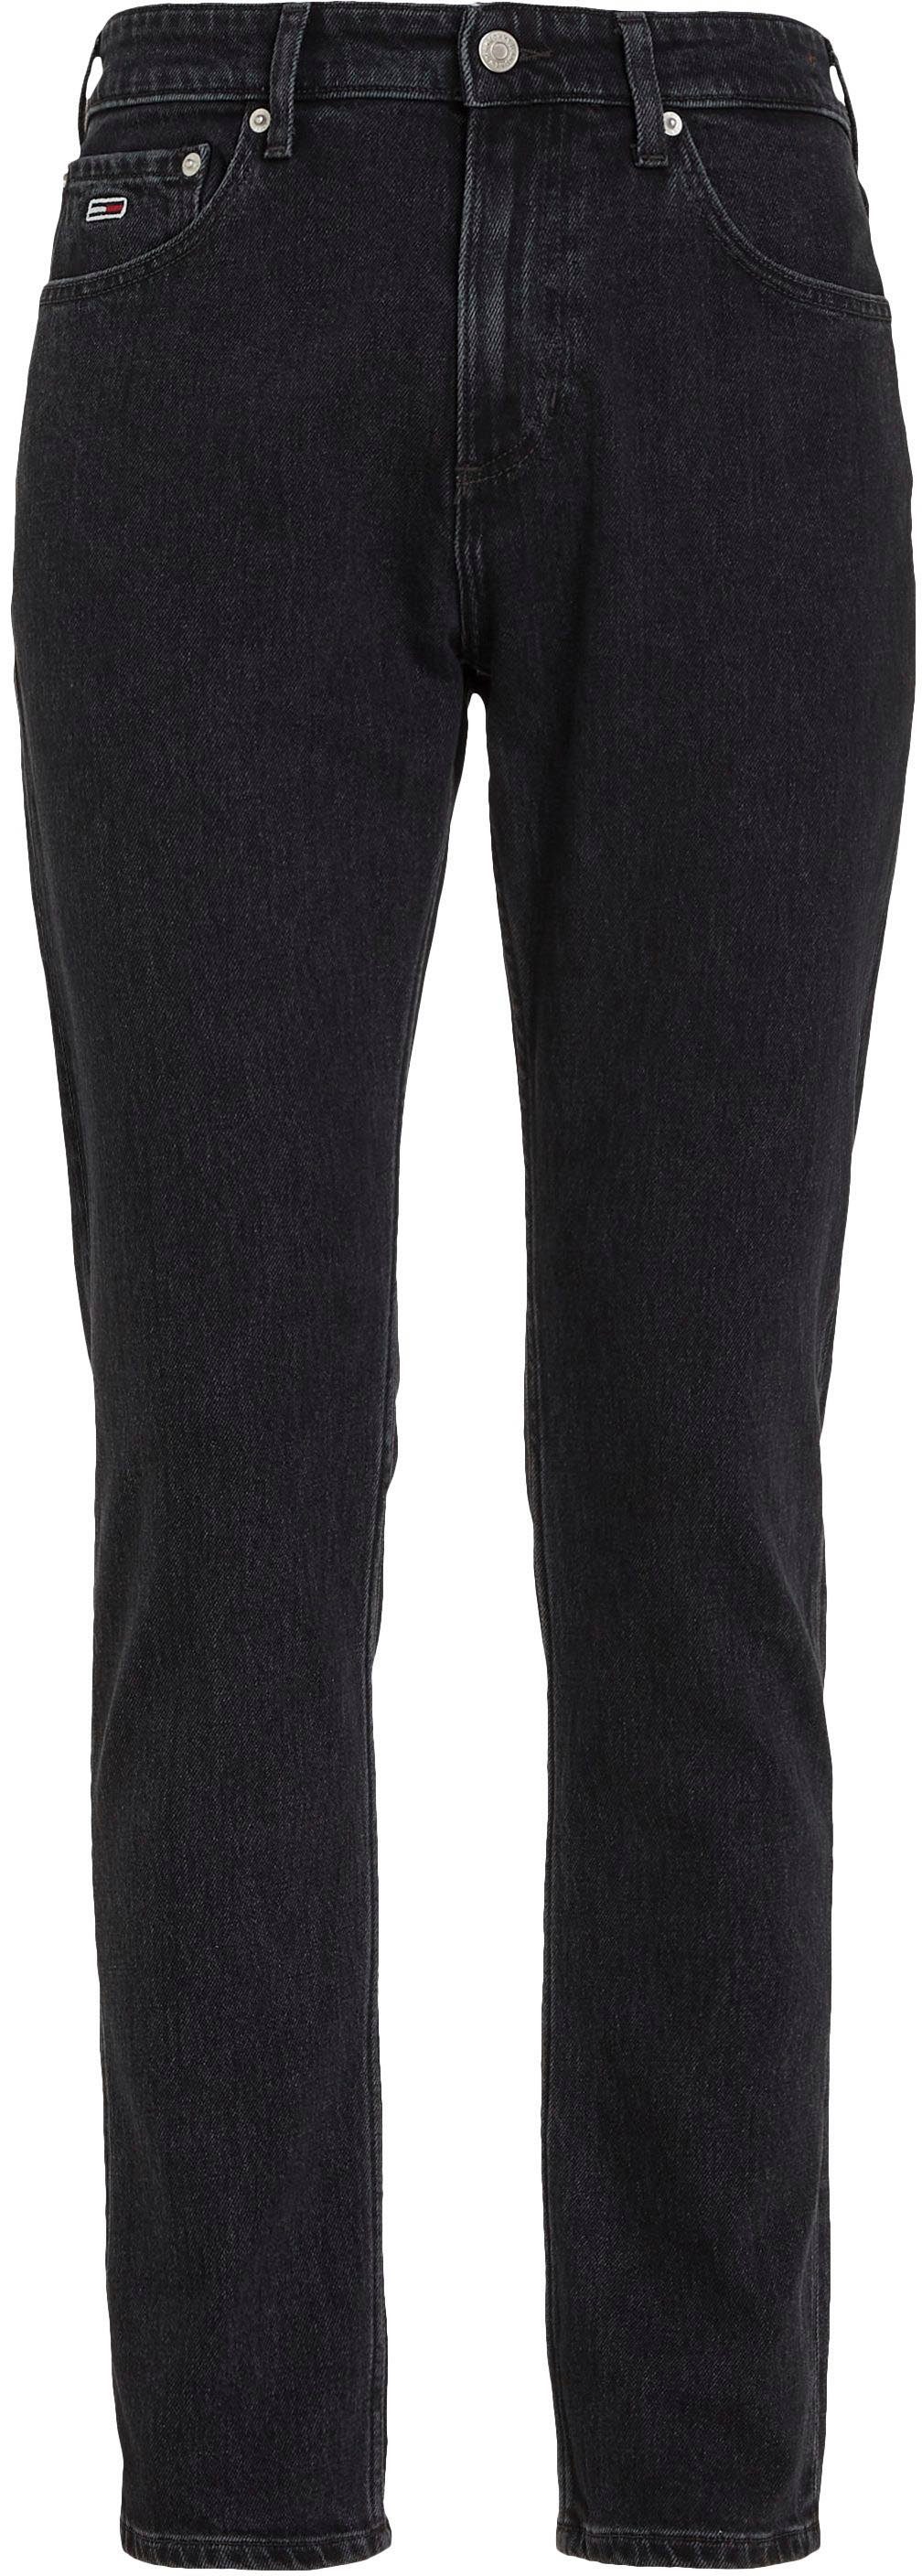 Y 5-Pocket-Jeans Denim Jeans Tommy Black SLIM SCANTON